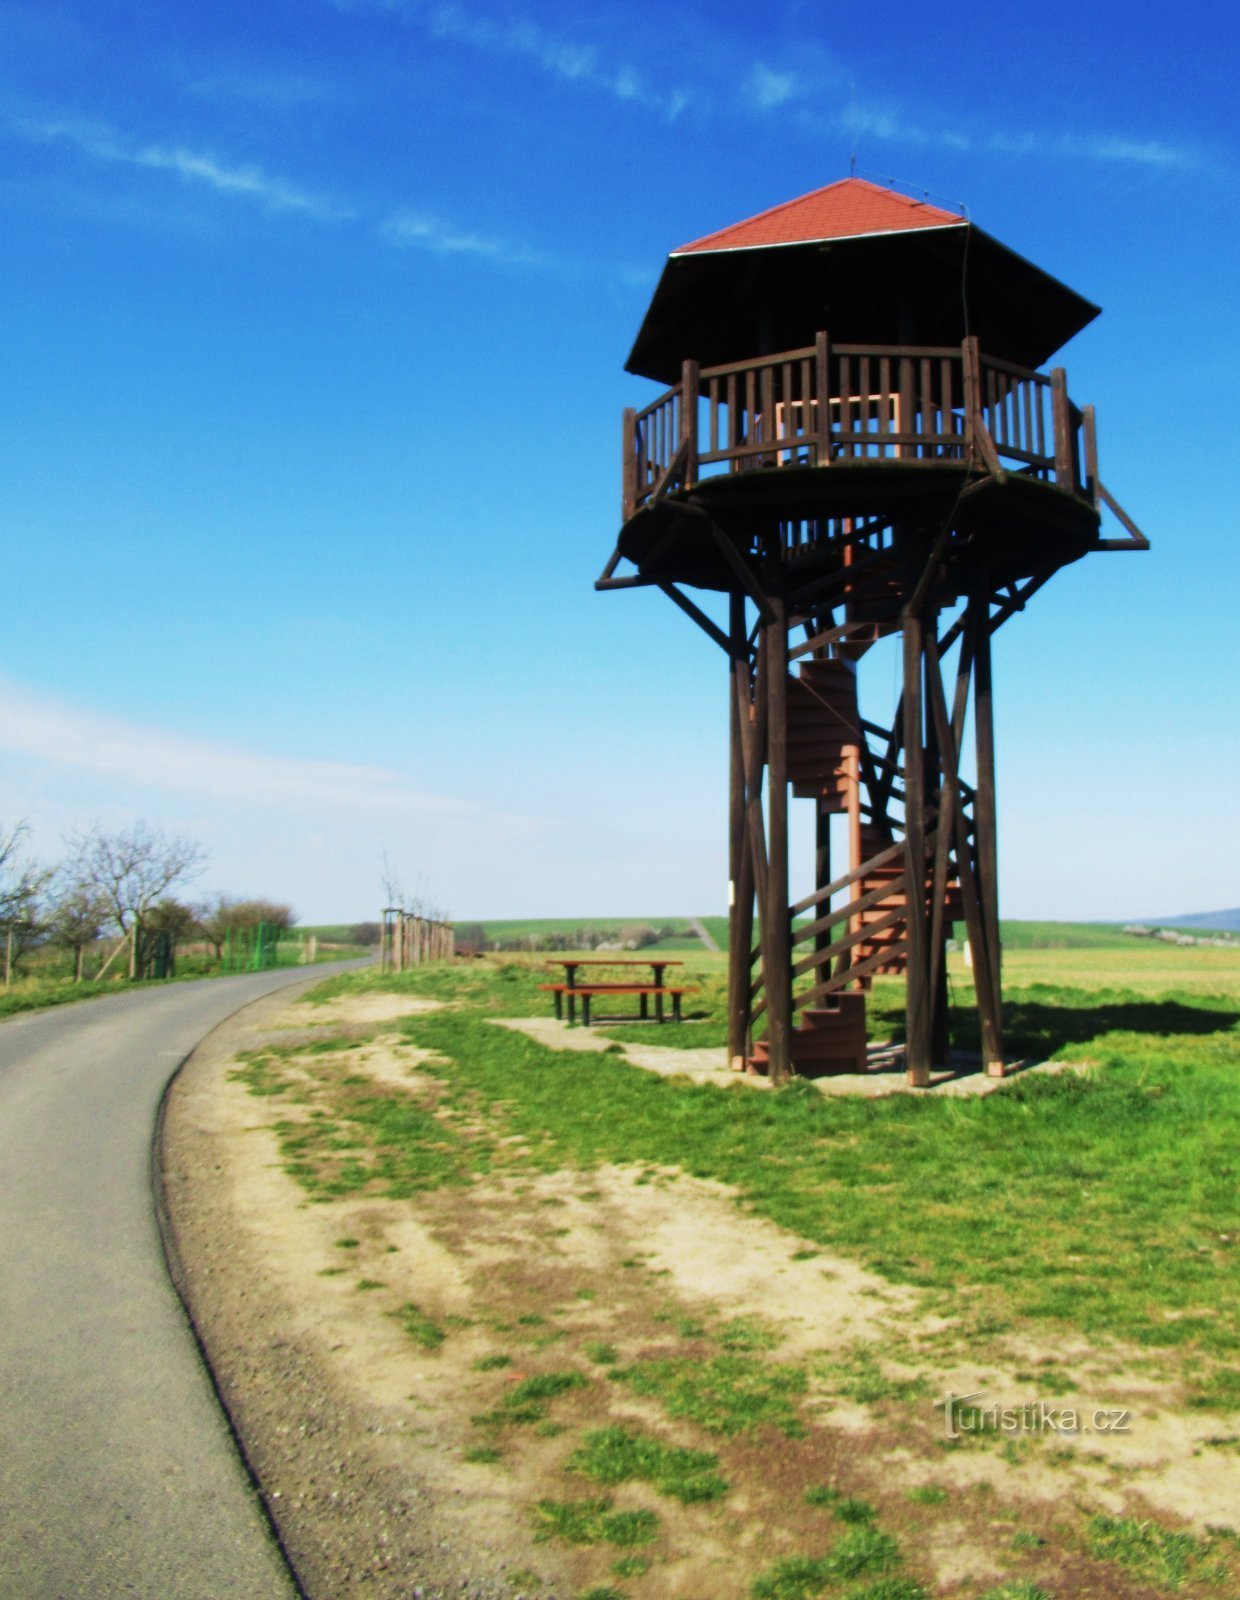 Torre de observação de Doubí na Slovácko